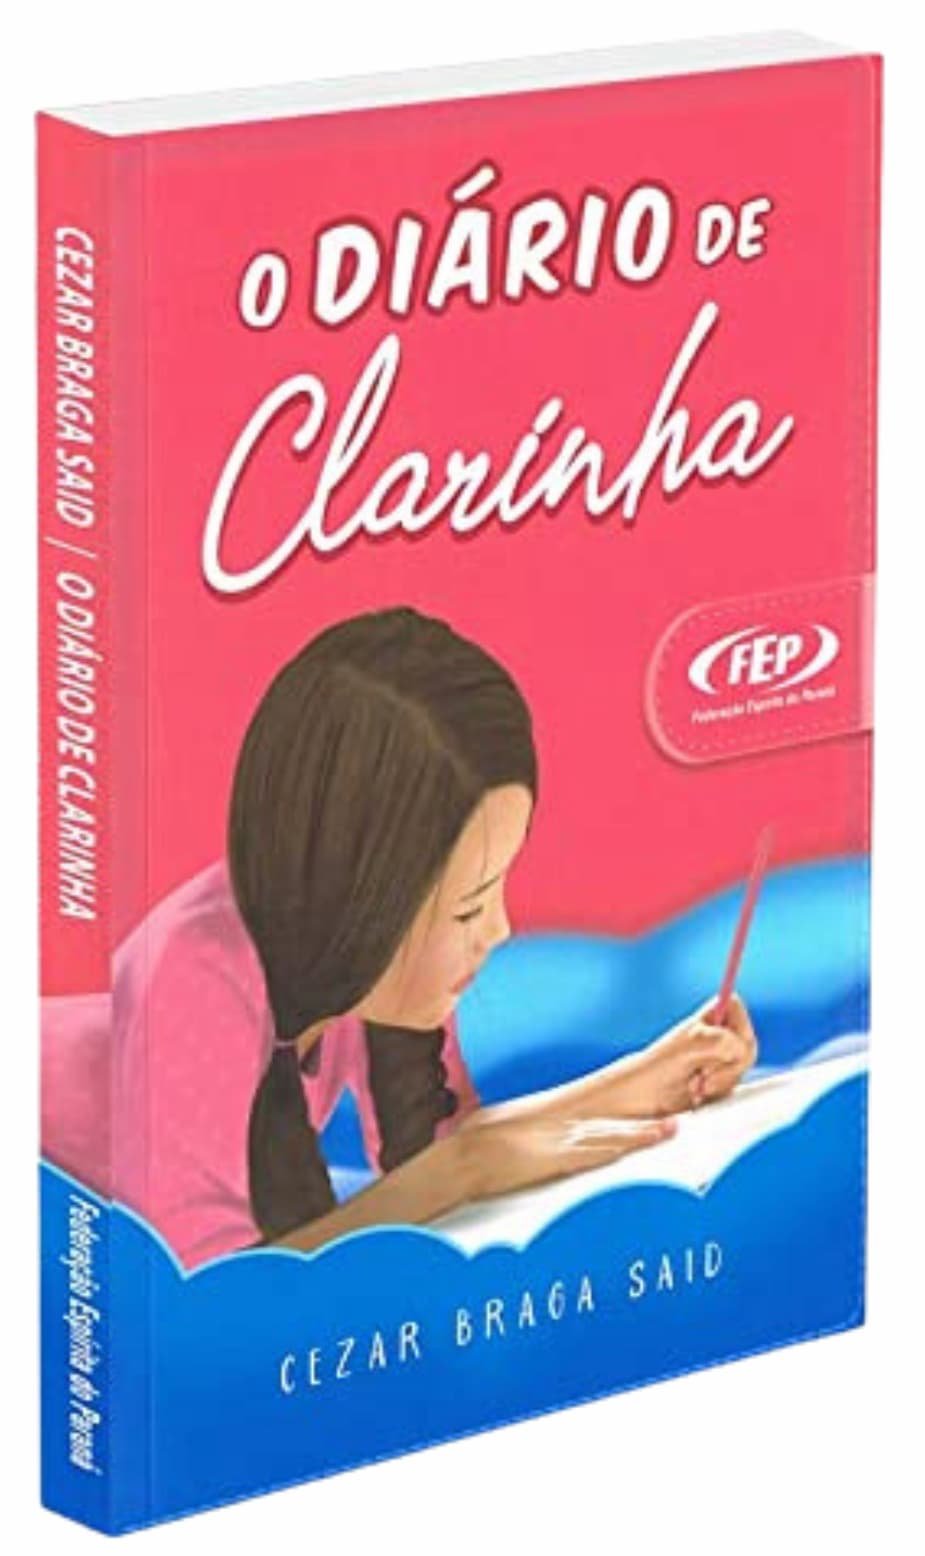 O Diario de Clarinha